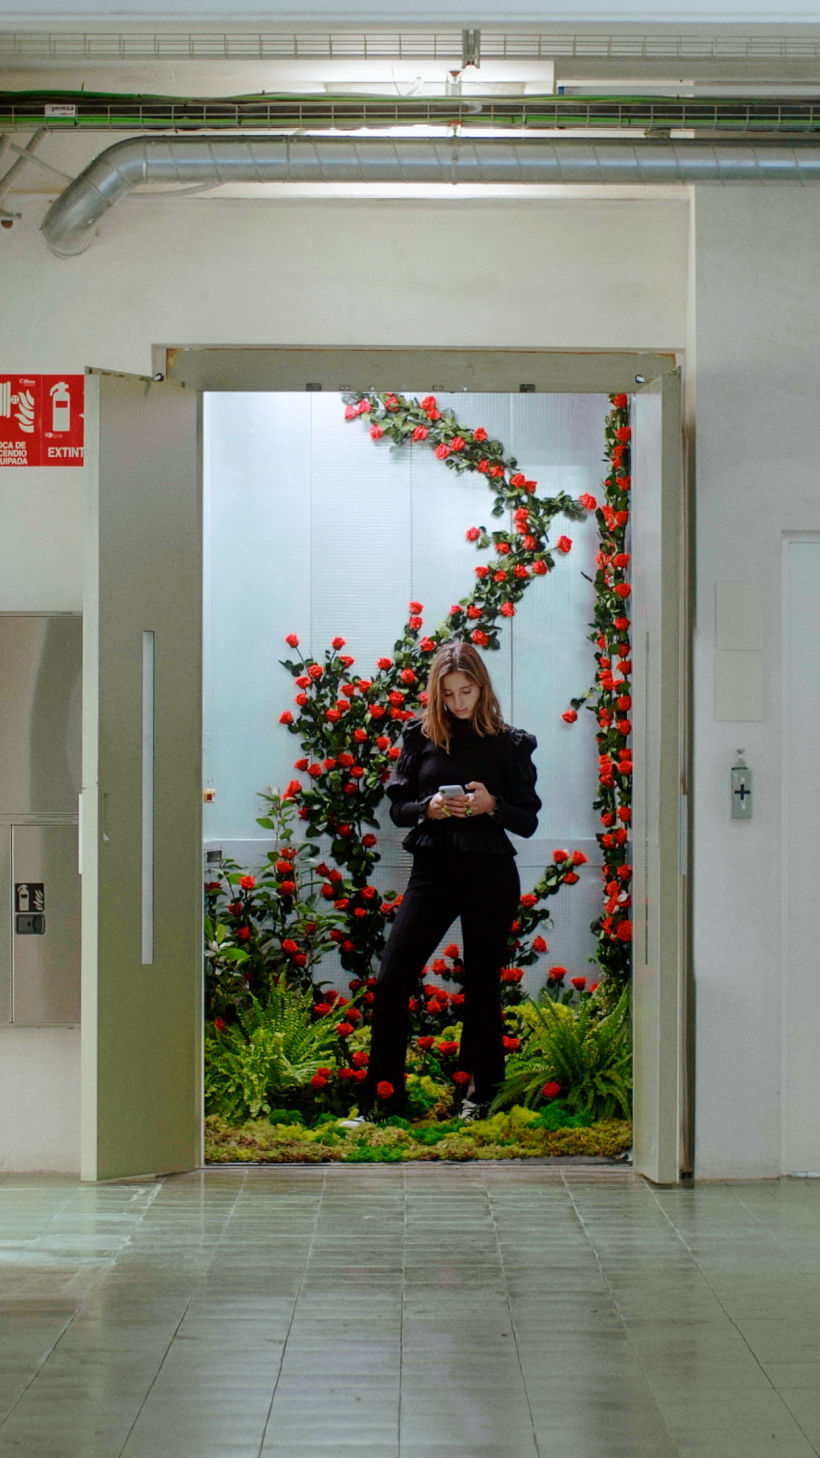 Júlia en nuestro ascensor de rosas :)